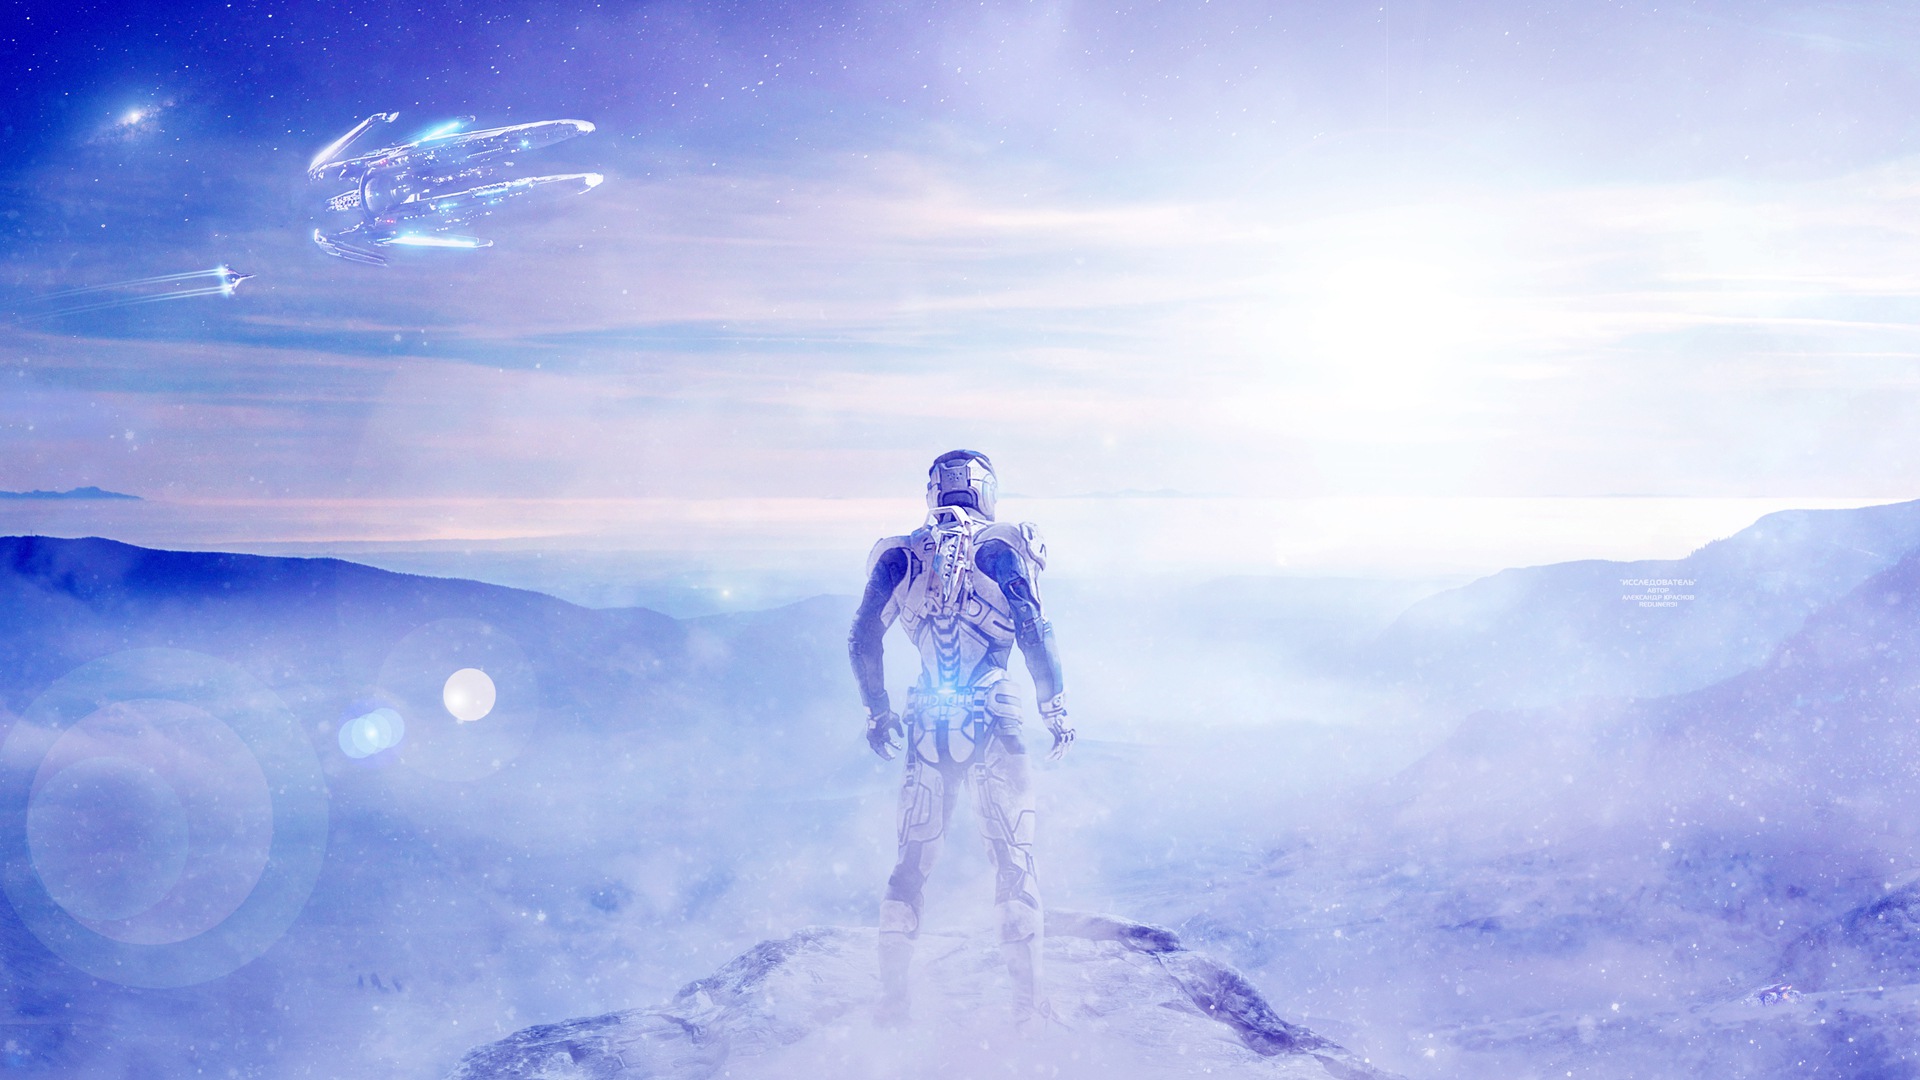 Ryder, Video games, Mass Effect: Andromeda, Ark Hyperion, Snow, Mass Effect Wallpaper